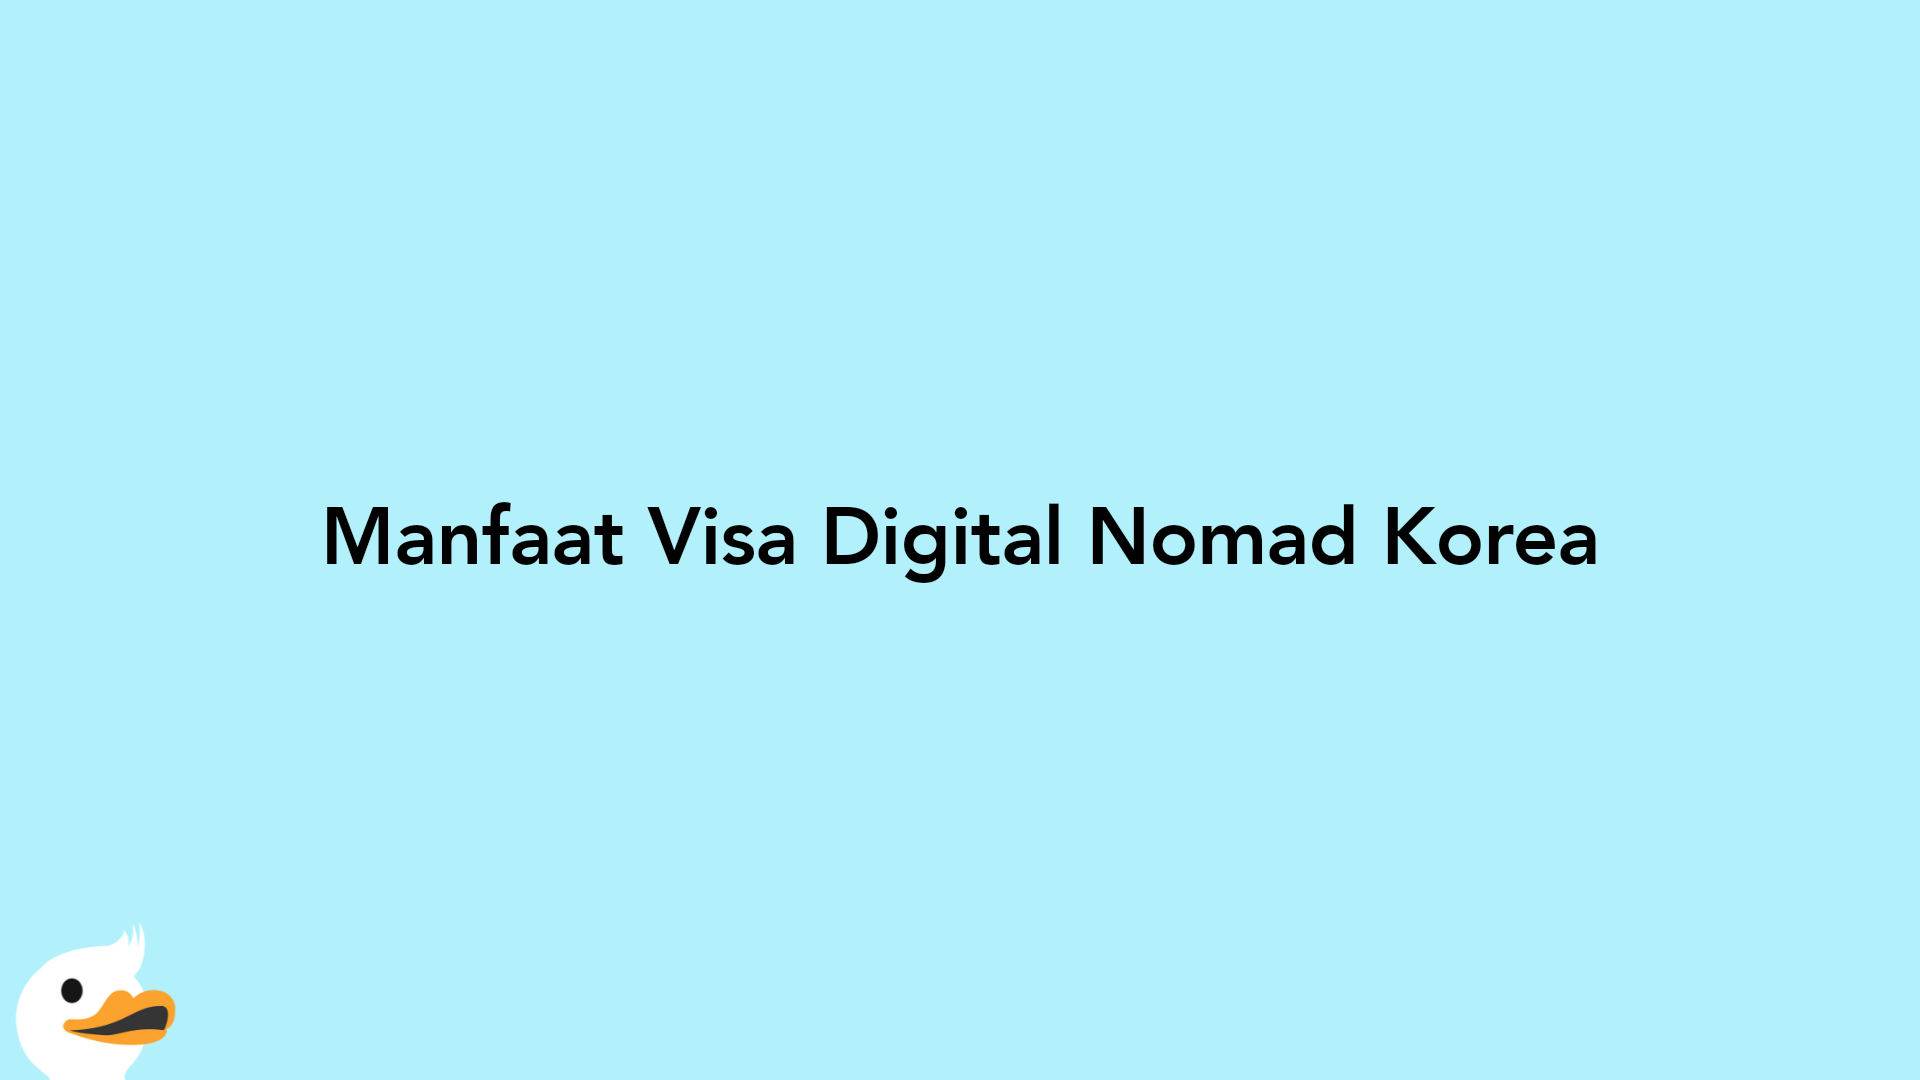 Manfaat Visa Digital Nomad Korea